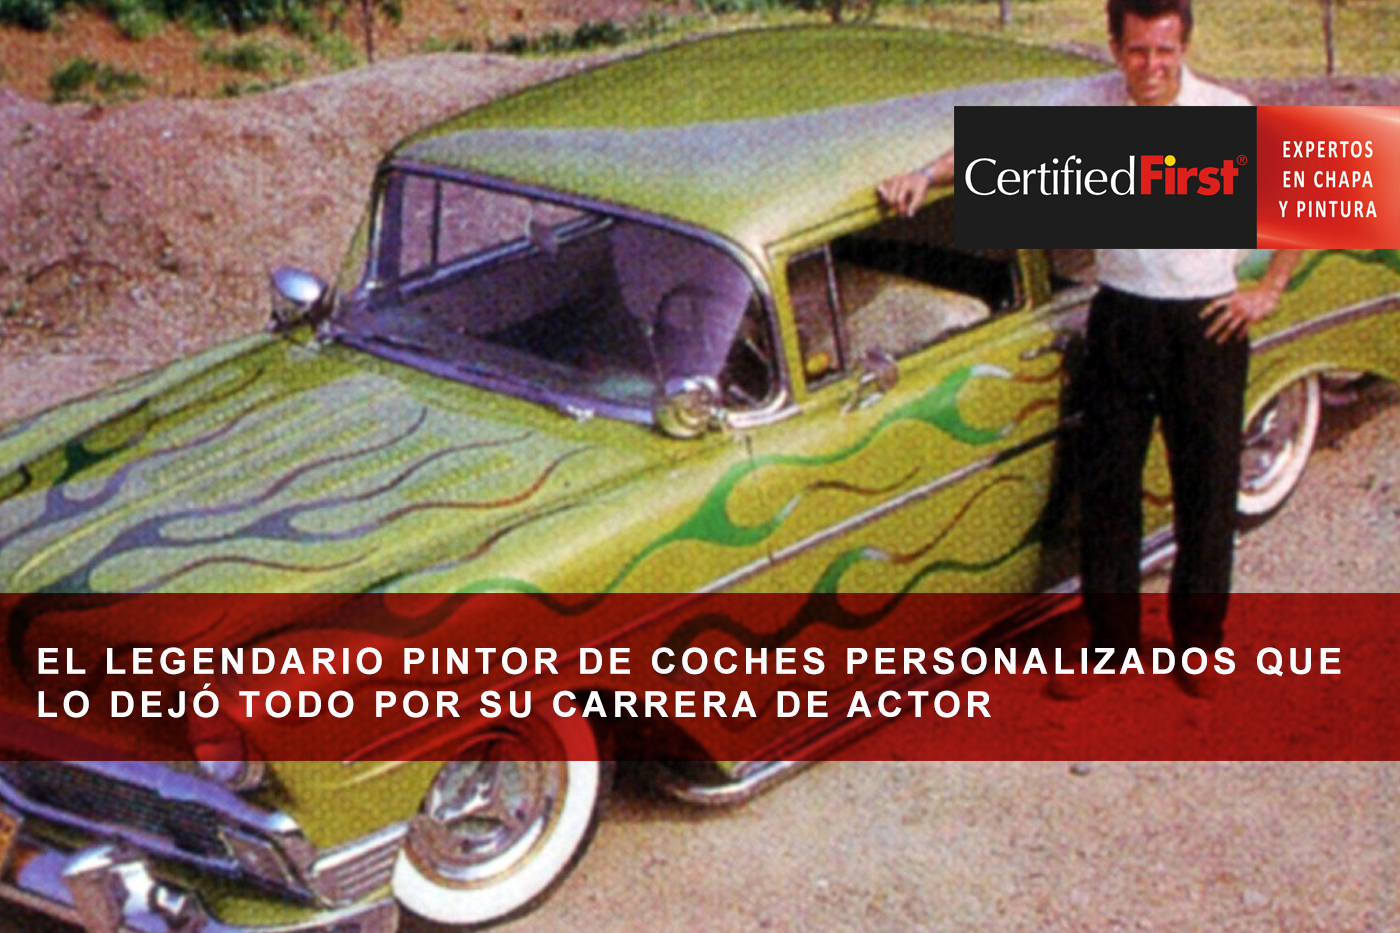 El legendario pintor de coches personalizados que lo dejó todo por su carrera de actor